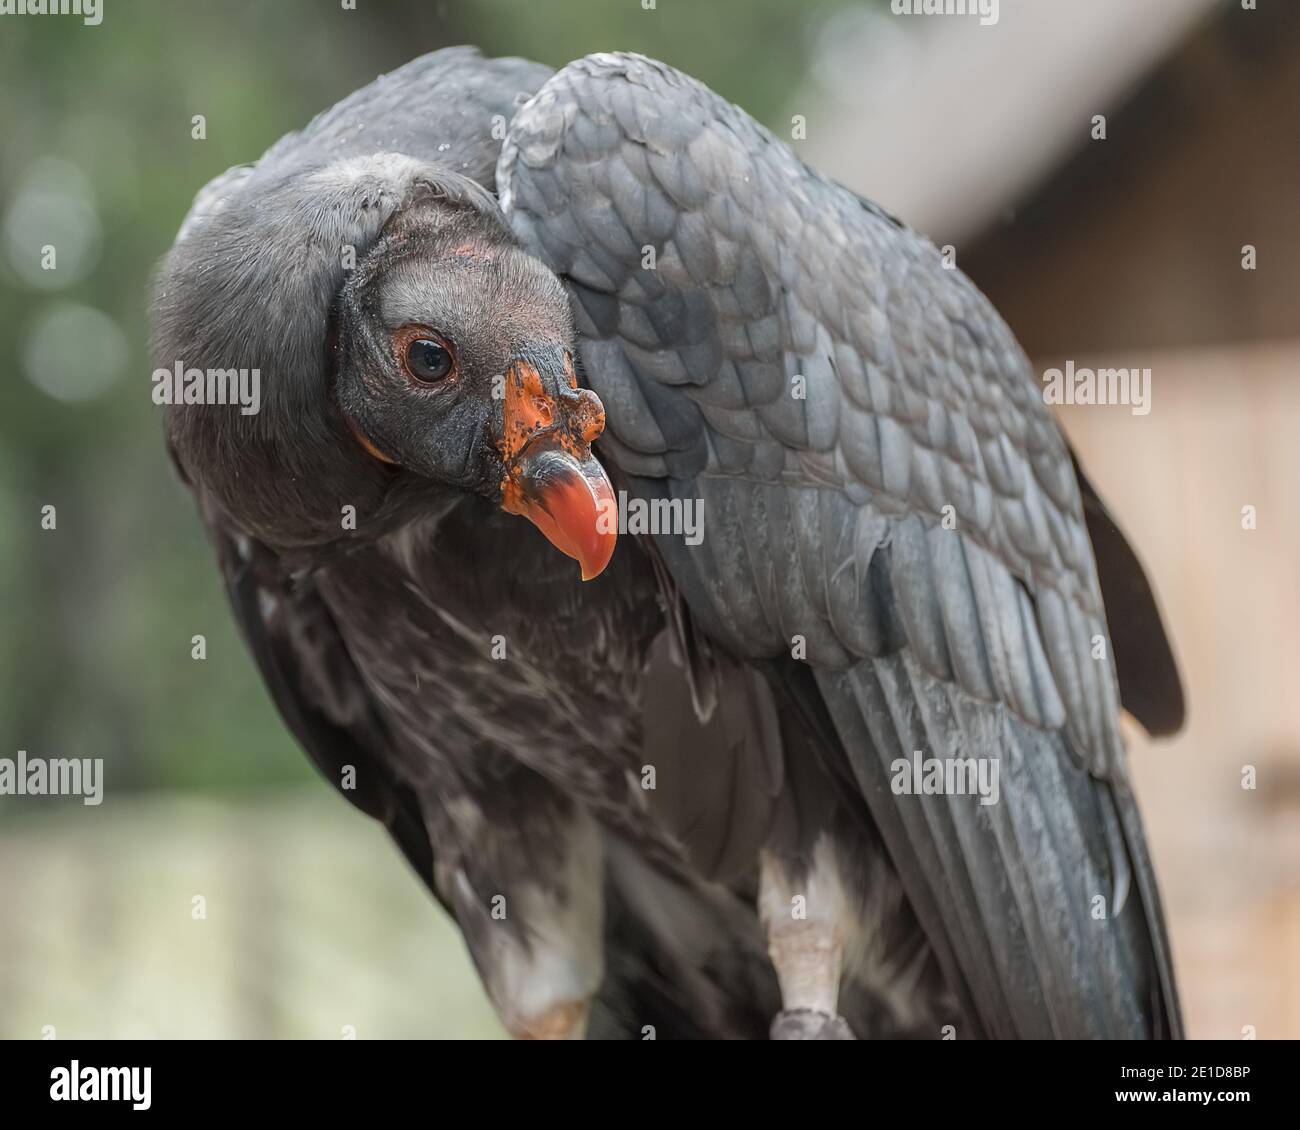 California condor, Gymnogyps californianus, a New World vulture. Birds show Trained birds Close up Stock Photo